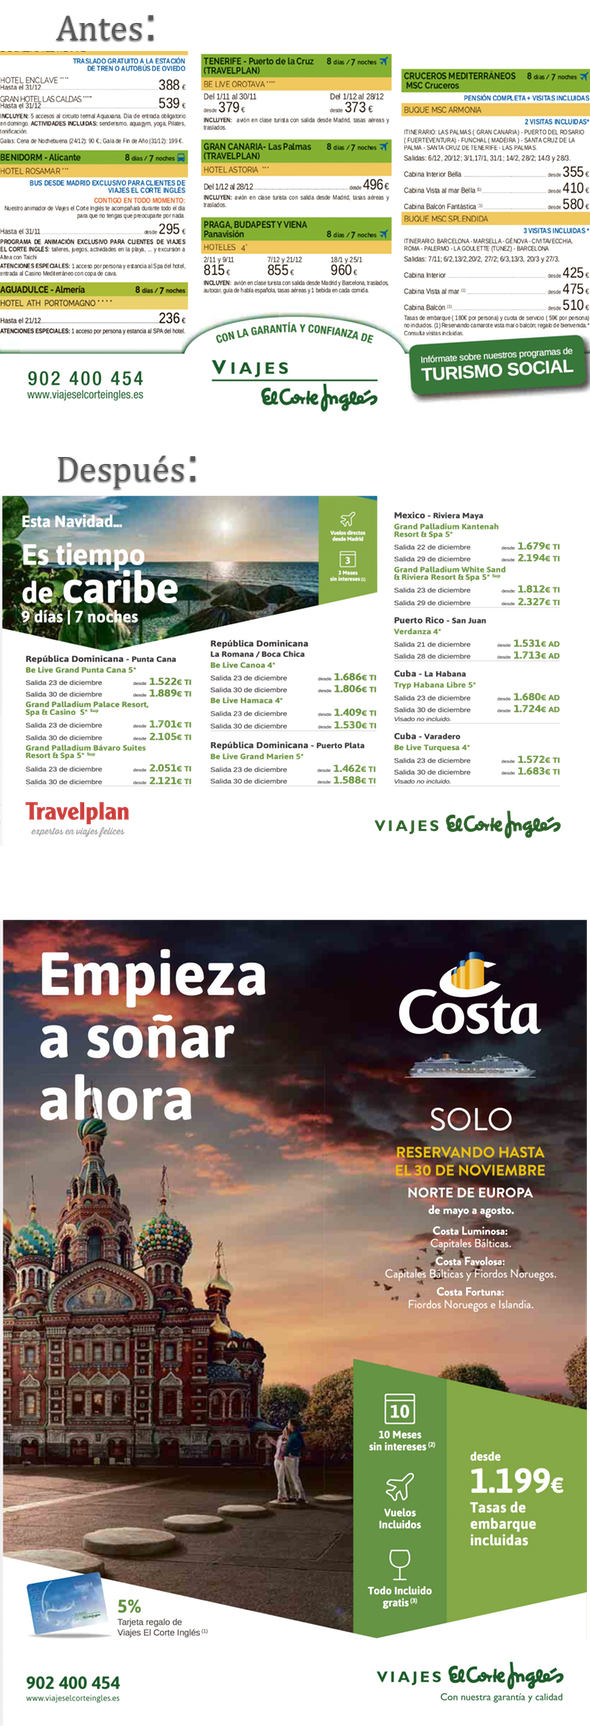 Viajes El Corte Inglés moderniza la estética anuncios | Noticias de Agencias de viajes, rss2 | Revista de turismo Preferente.com